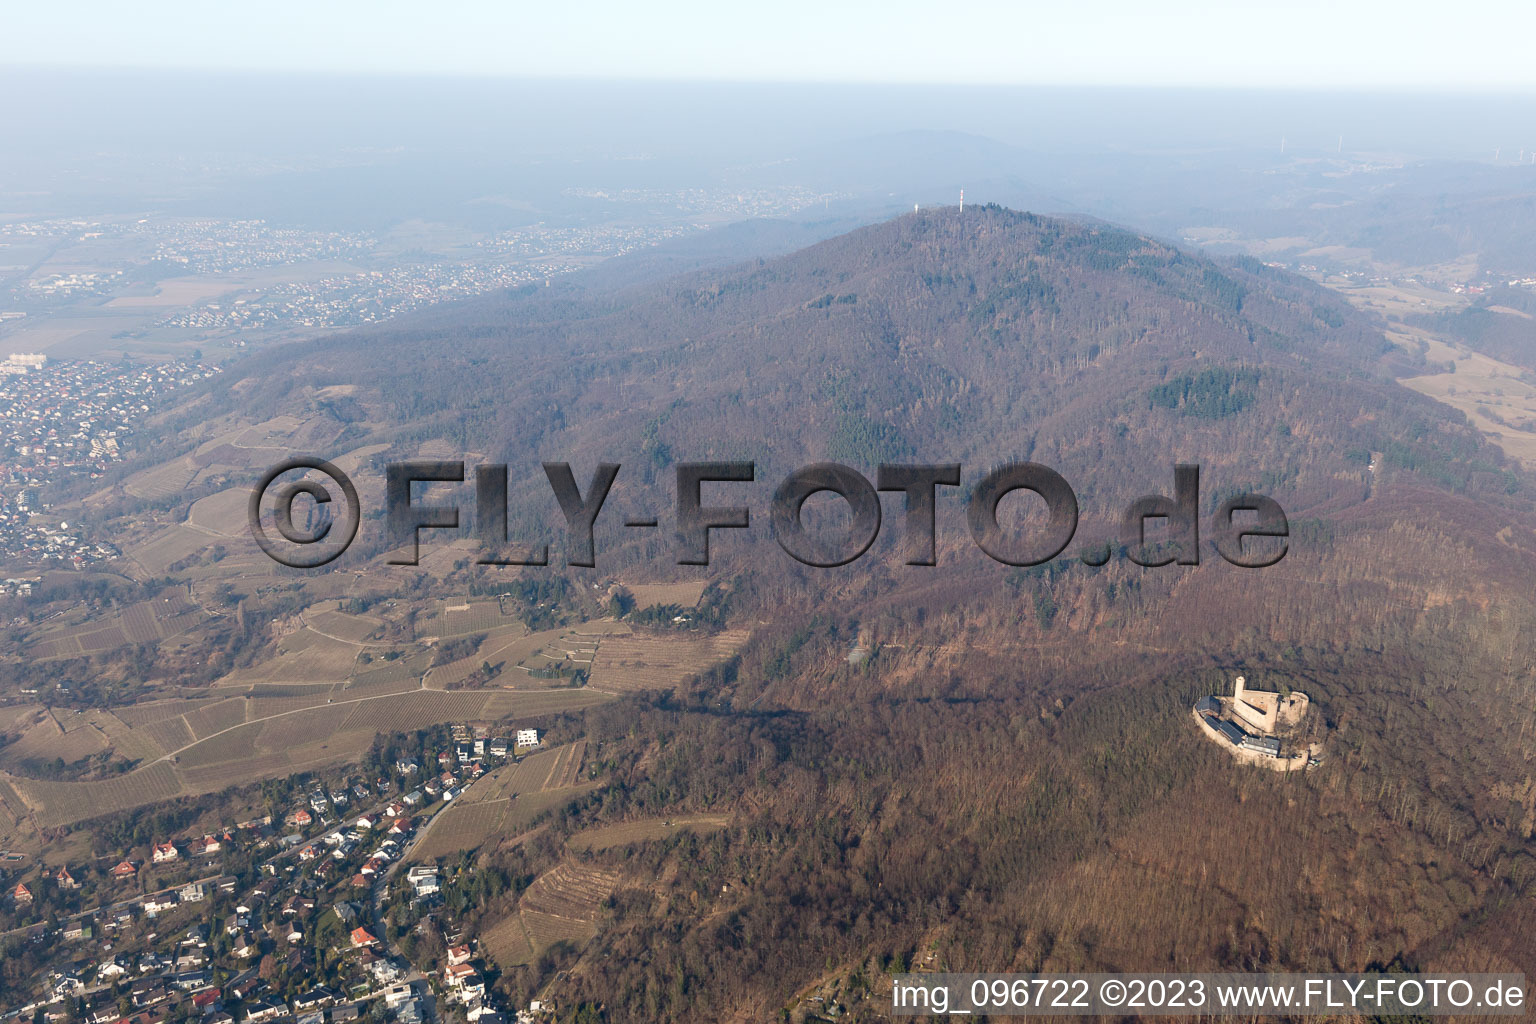 Auerbach im Bundesland Hessen, Deutschland aus der Luft betrachtet